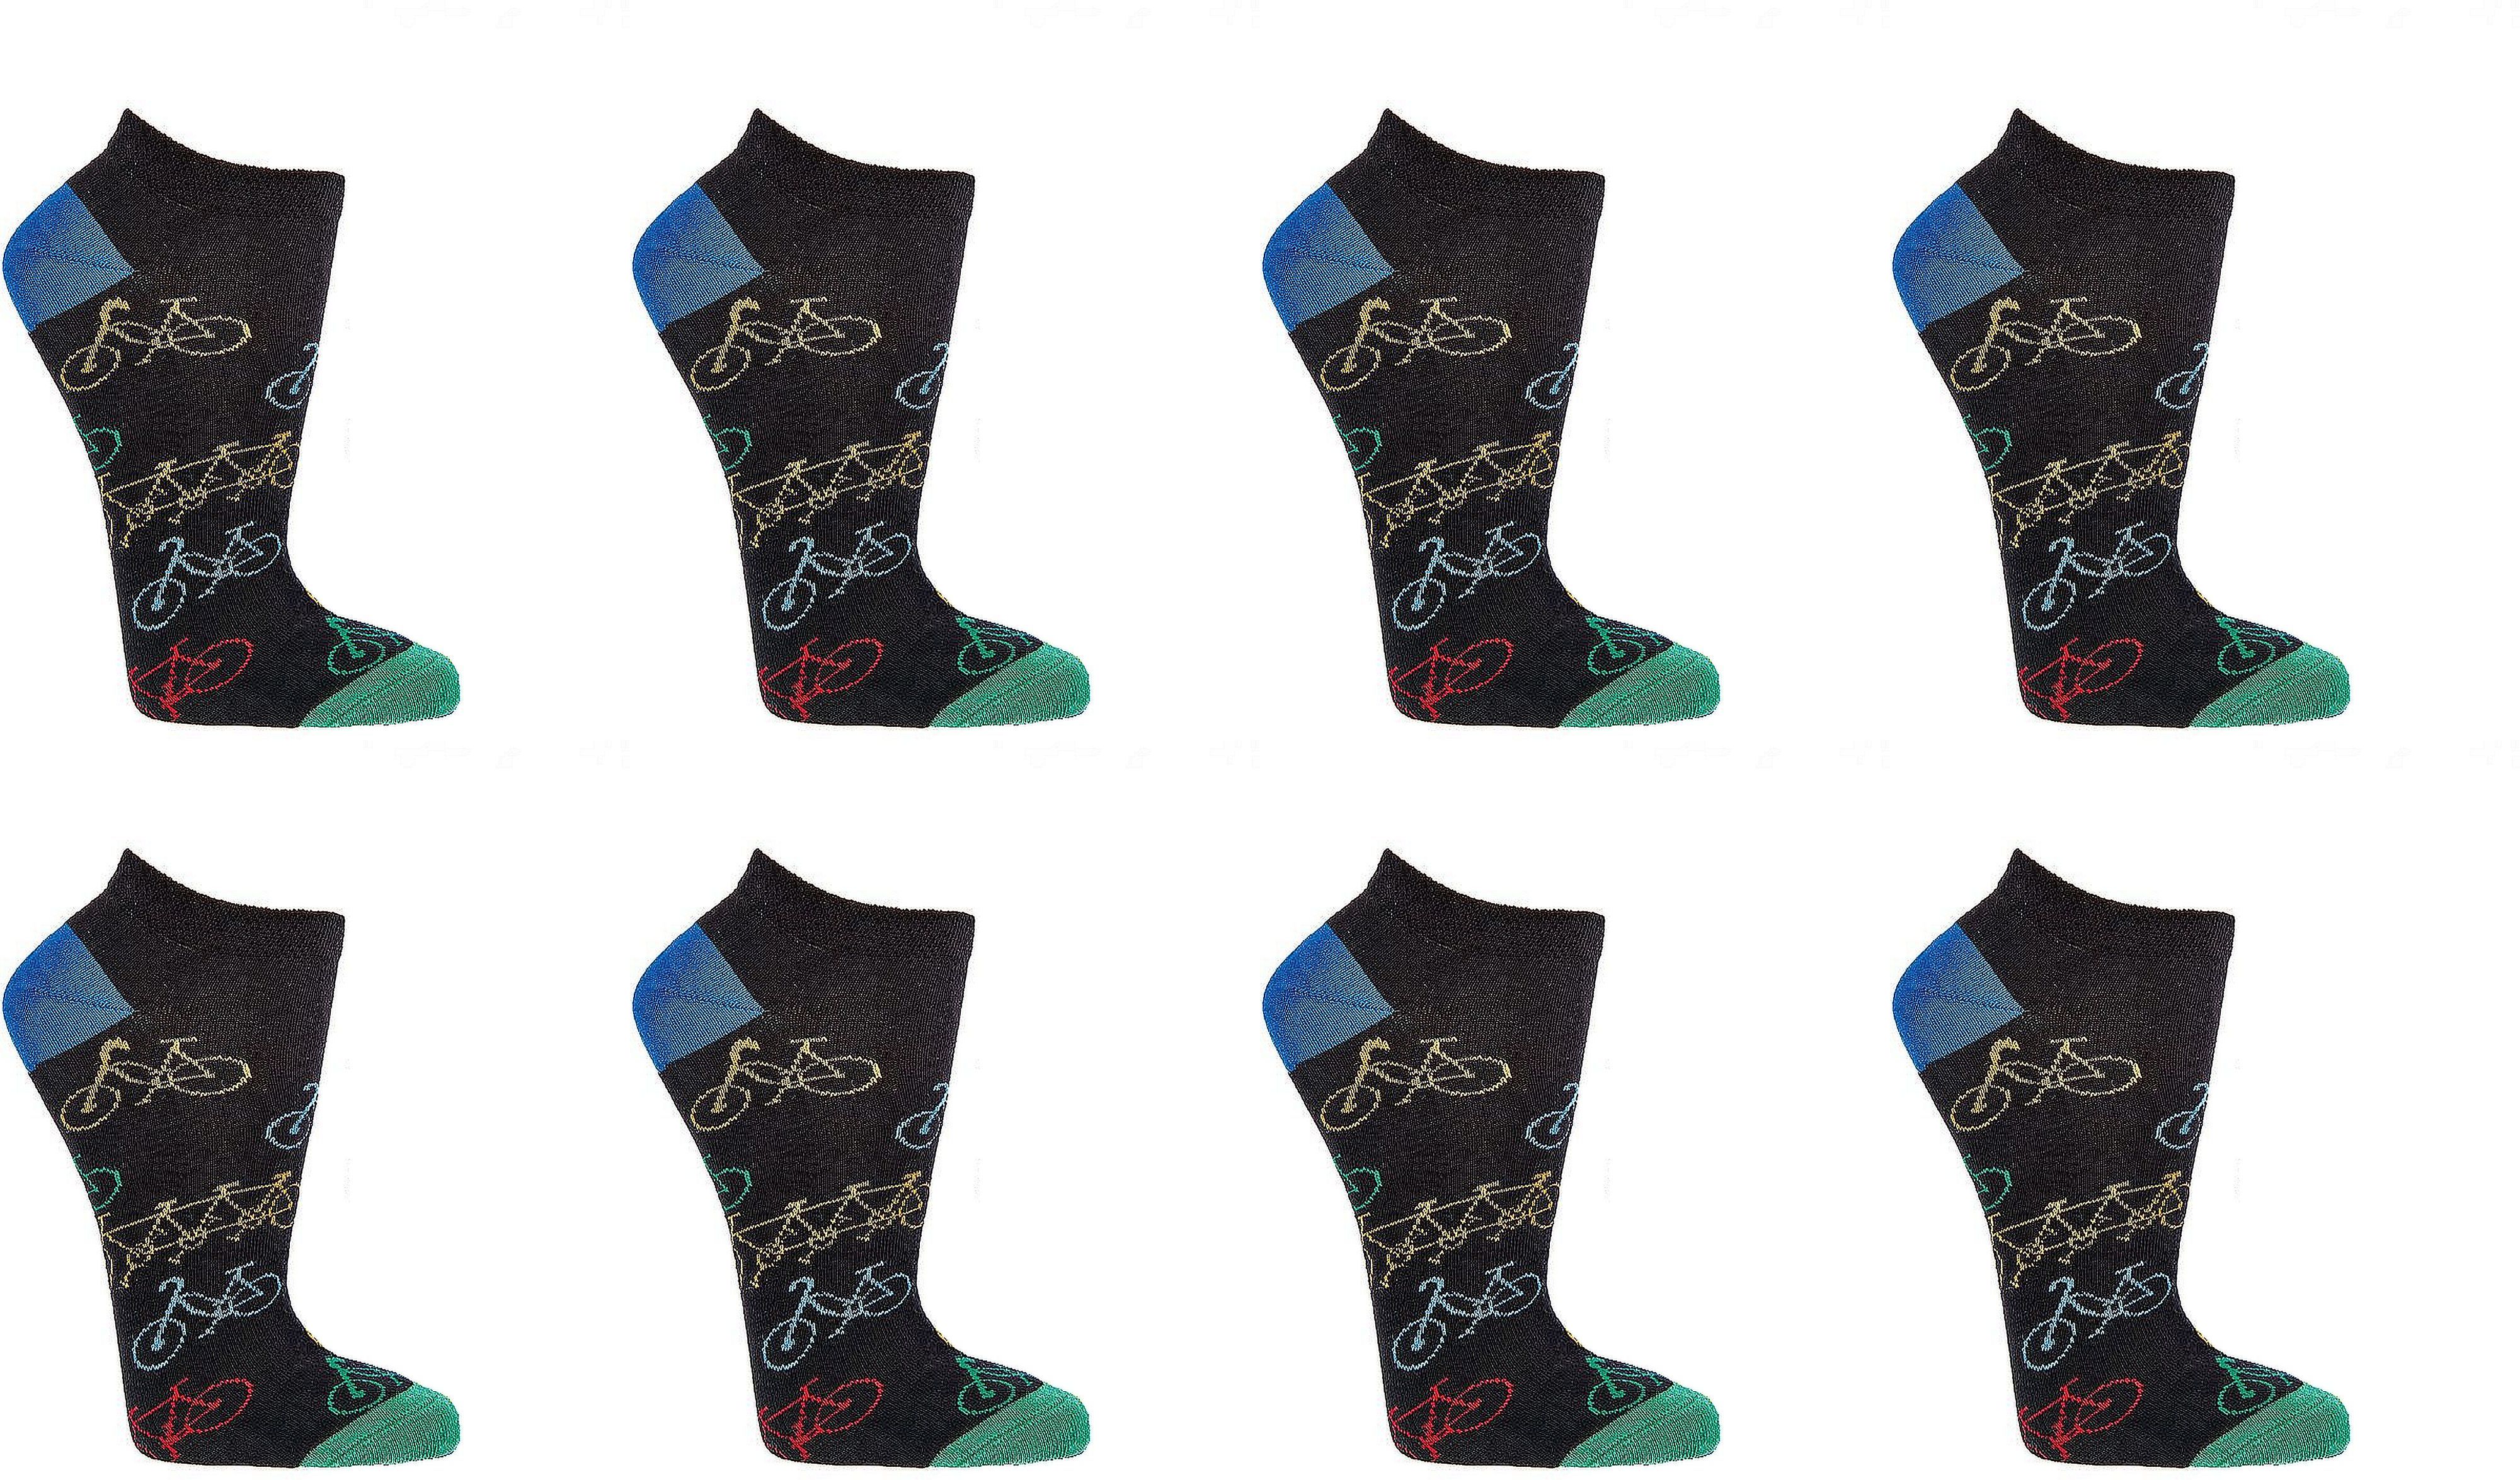 FAHRRAD Witzige Sneaker Socken - SOCKS 4 FUN - Mehr Spaß im Alltag für Teenager, Damen und Herren, 2 oder 4 Paar